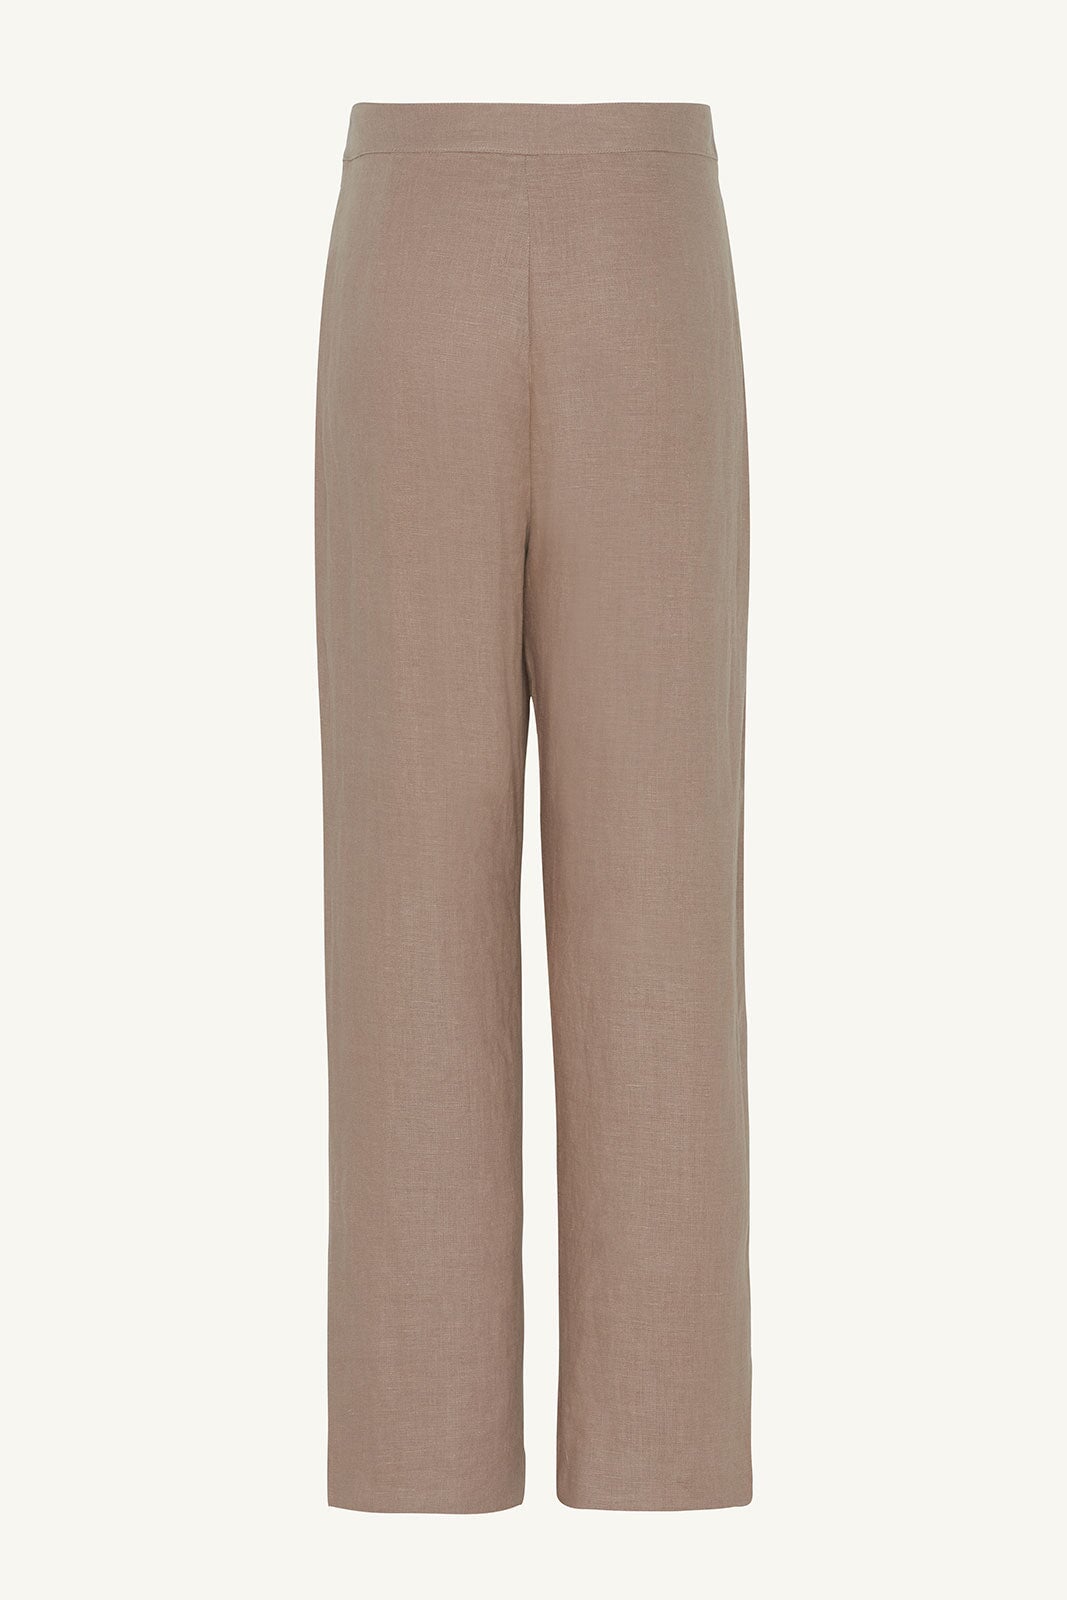 Linen Straight Leg Pants - Caffe Clothing epschoolboard 